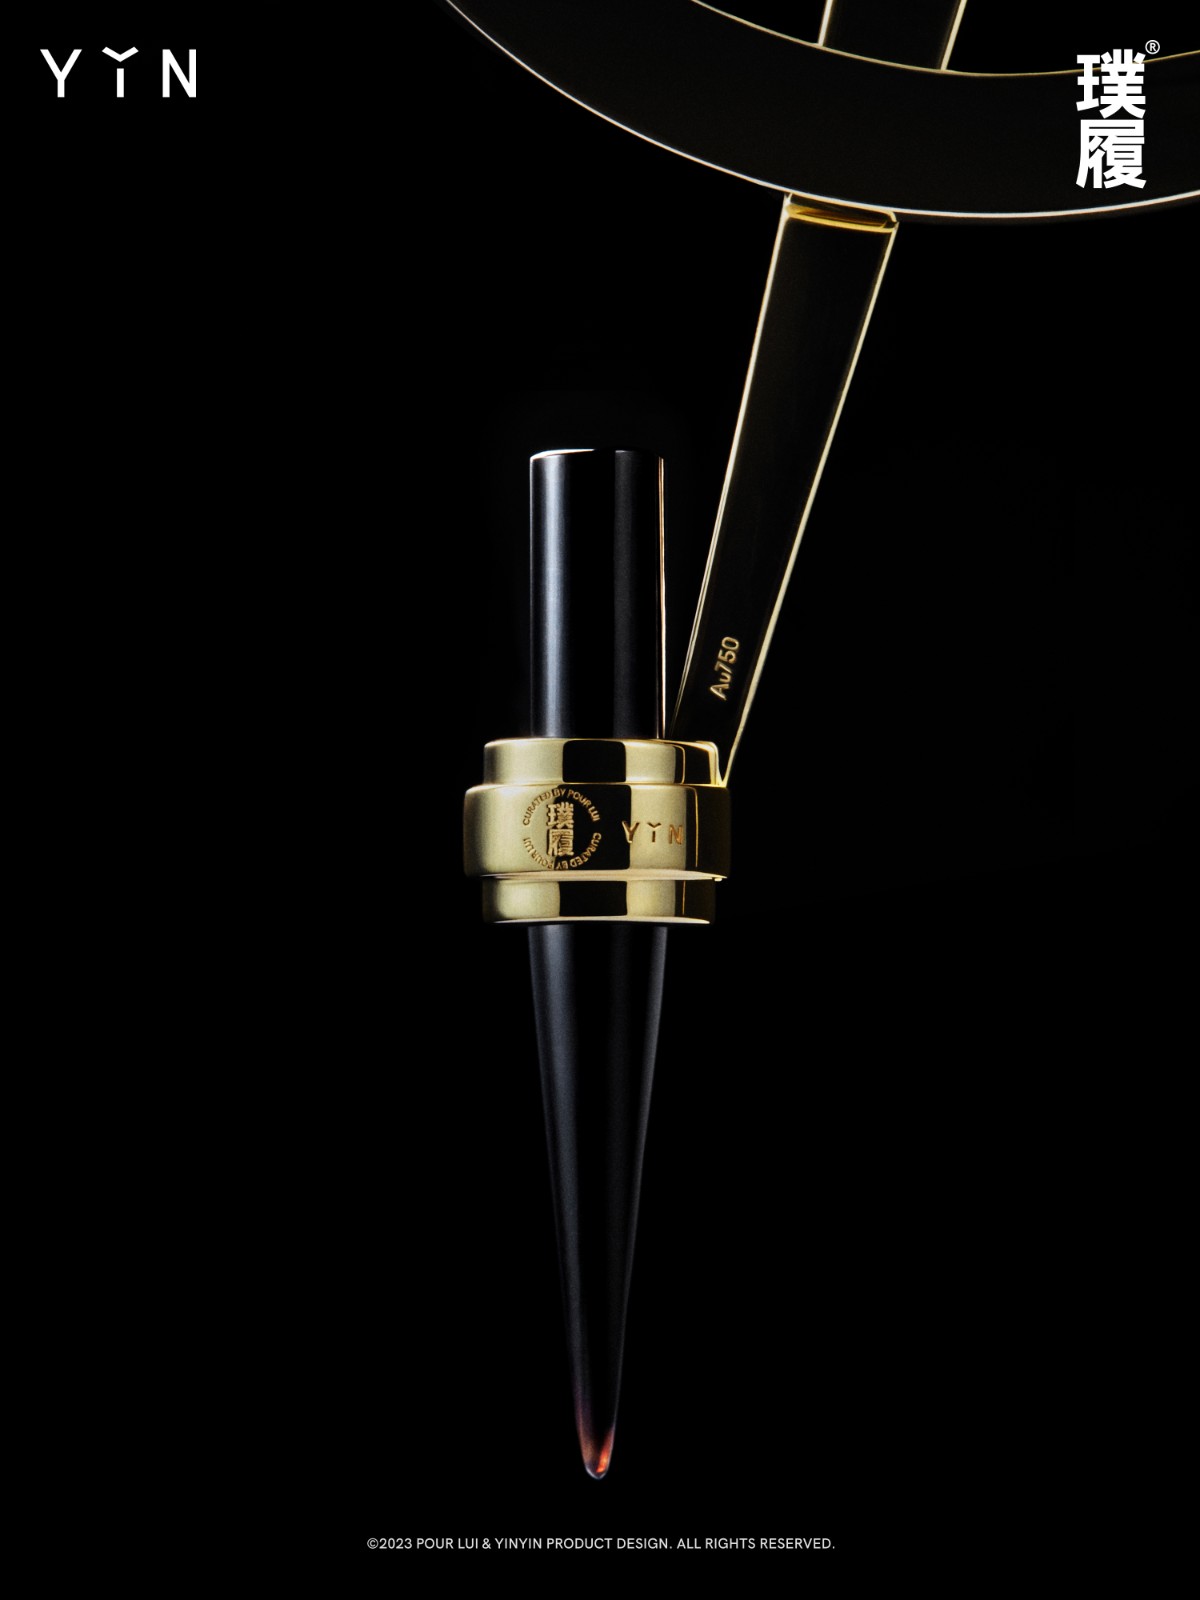 璞履® POUR LUI联合珠宝品牌 YIN隐发布全新艺术创作「黄金圆规」